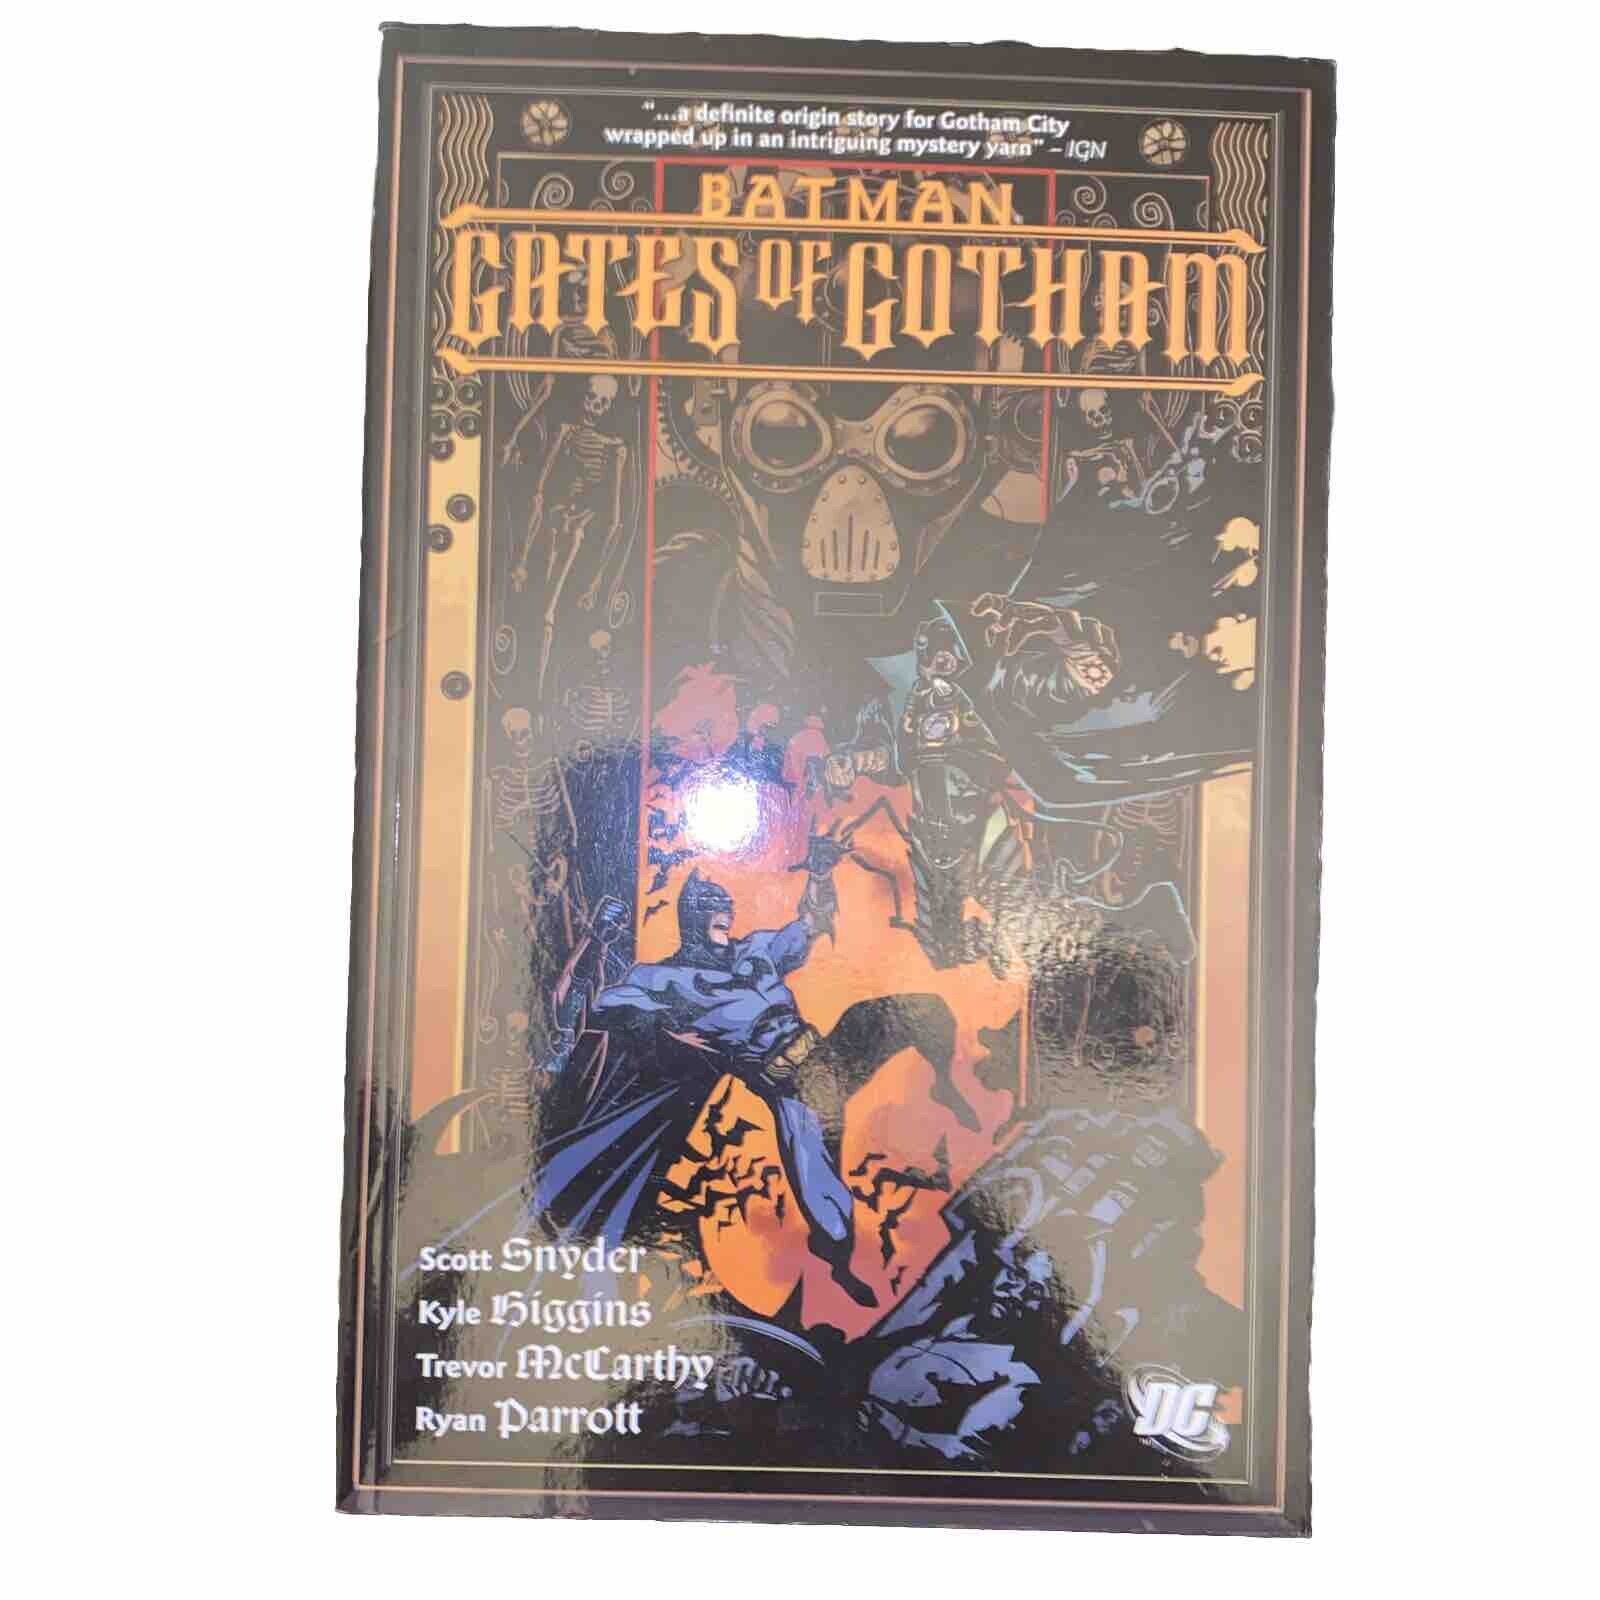 Batman: Gates of Gotham (DC Comics, April 2012)